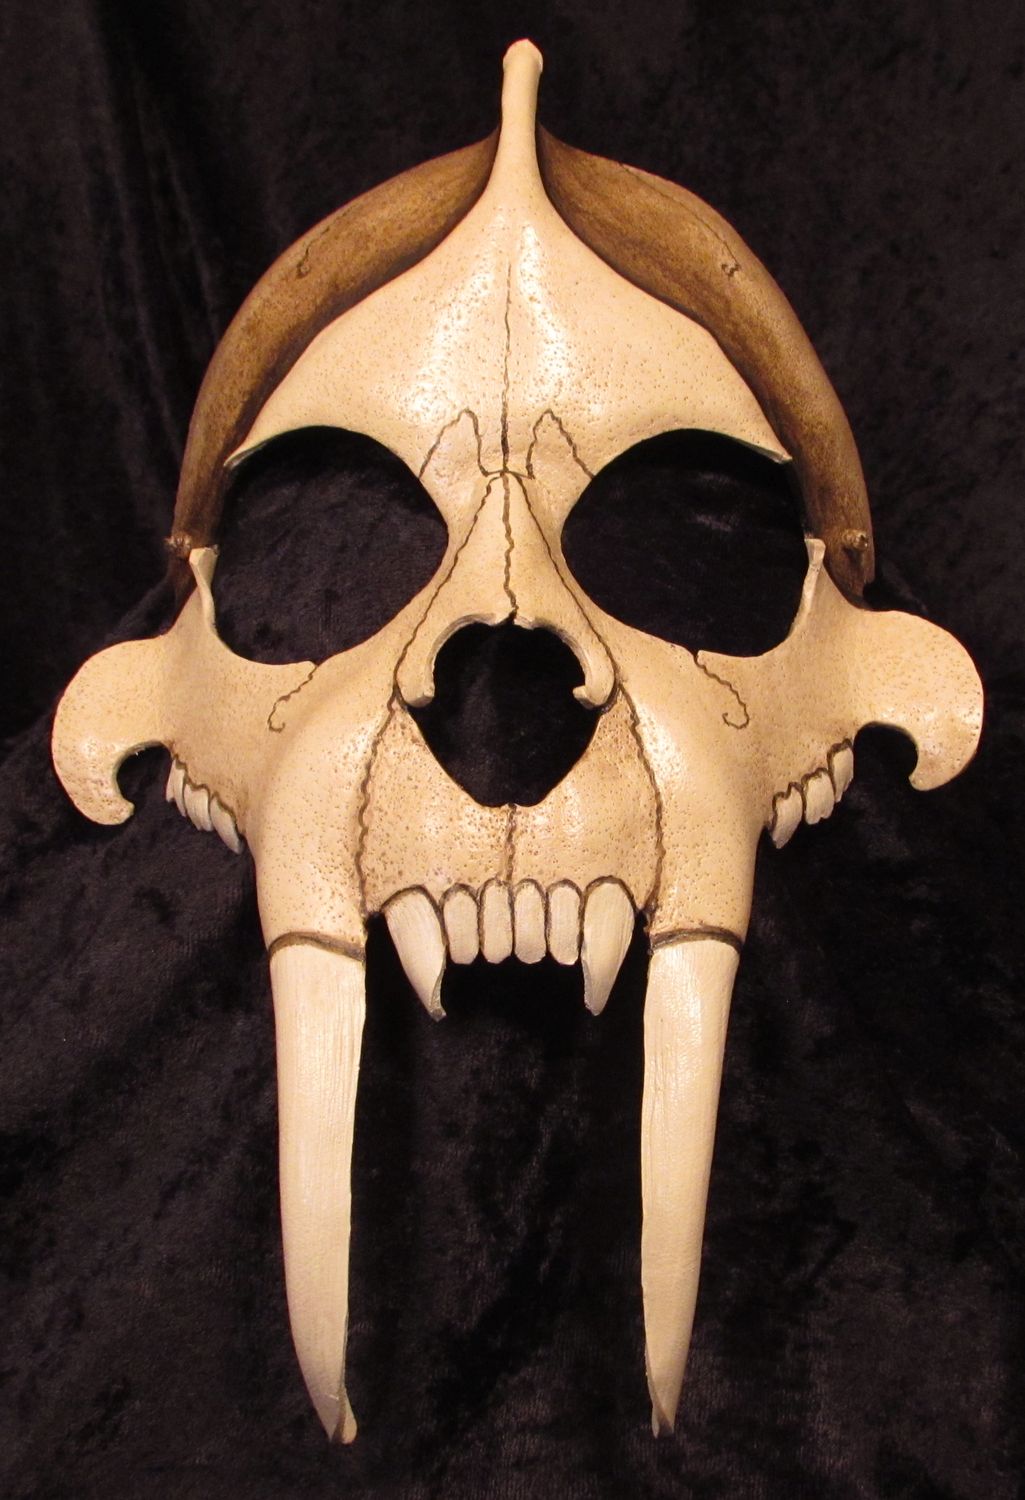 Saber tooth tiger skull mask.